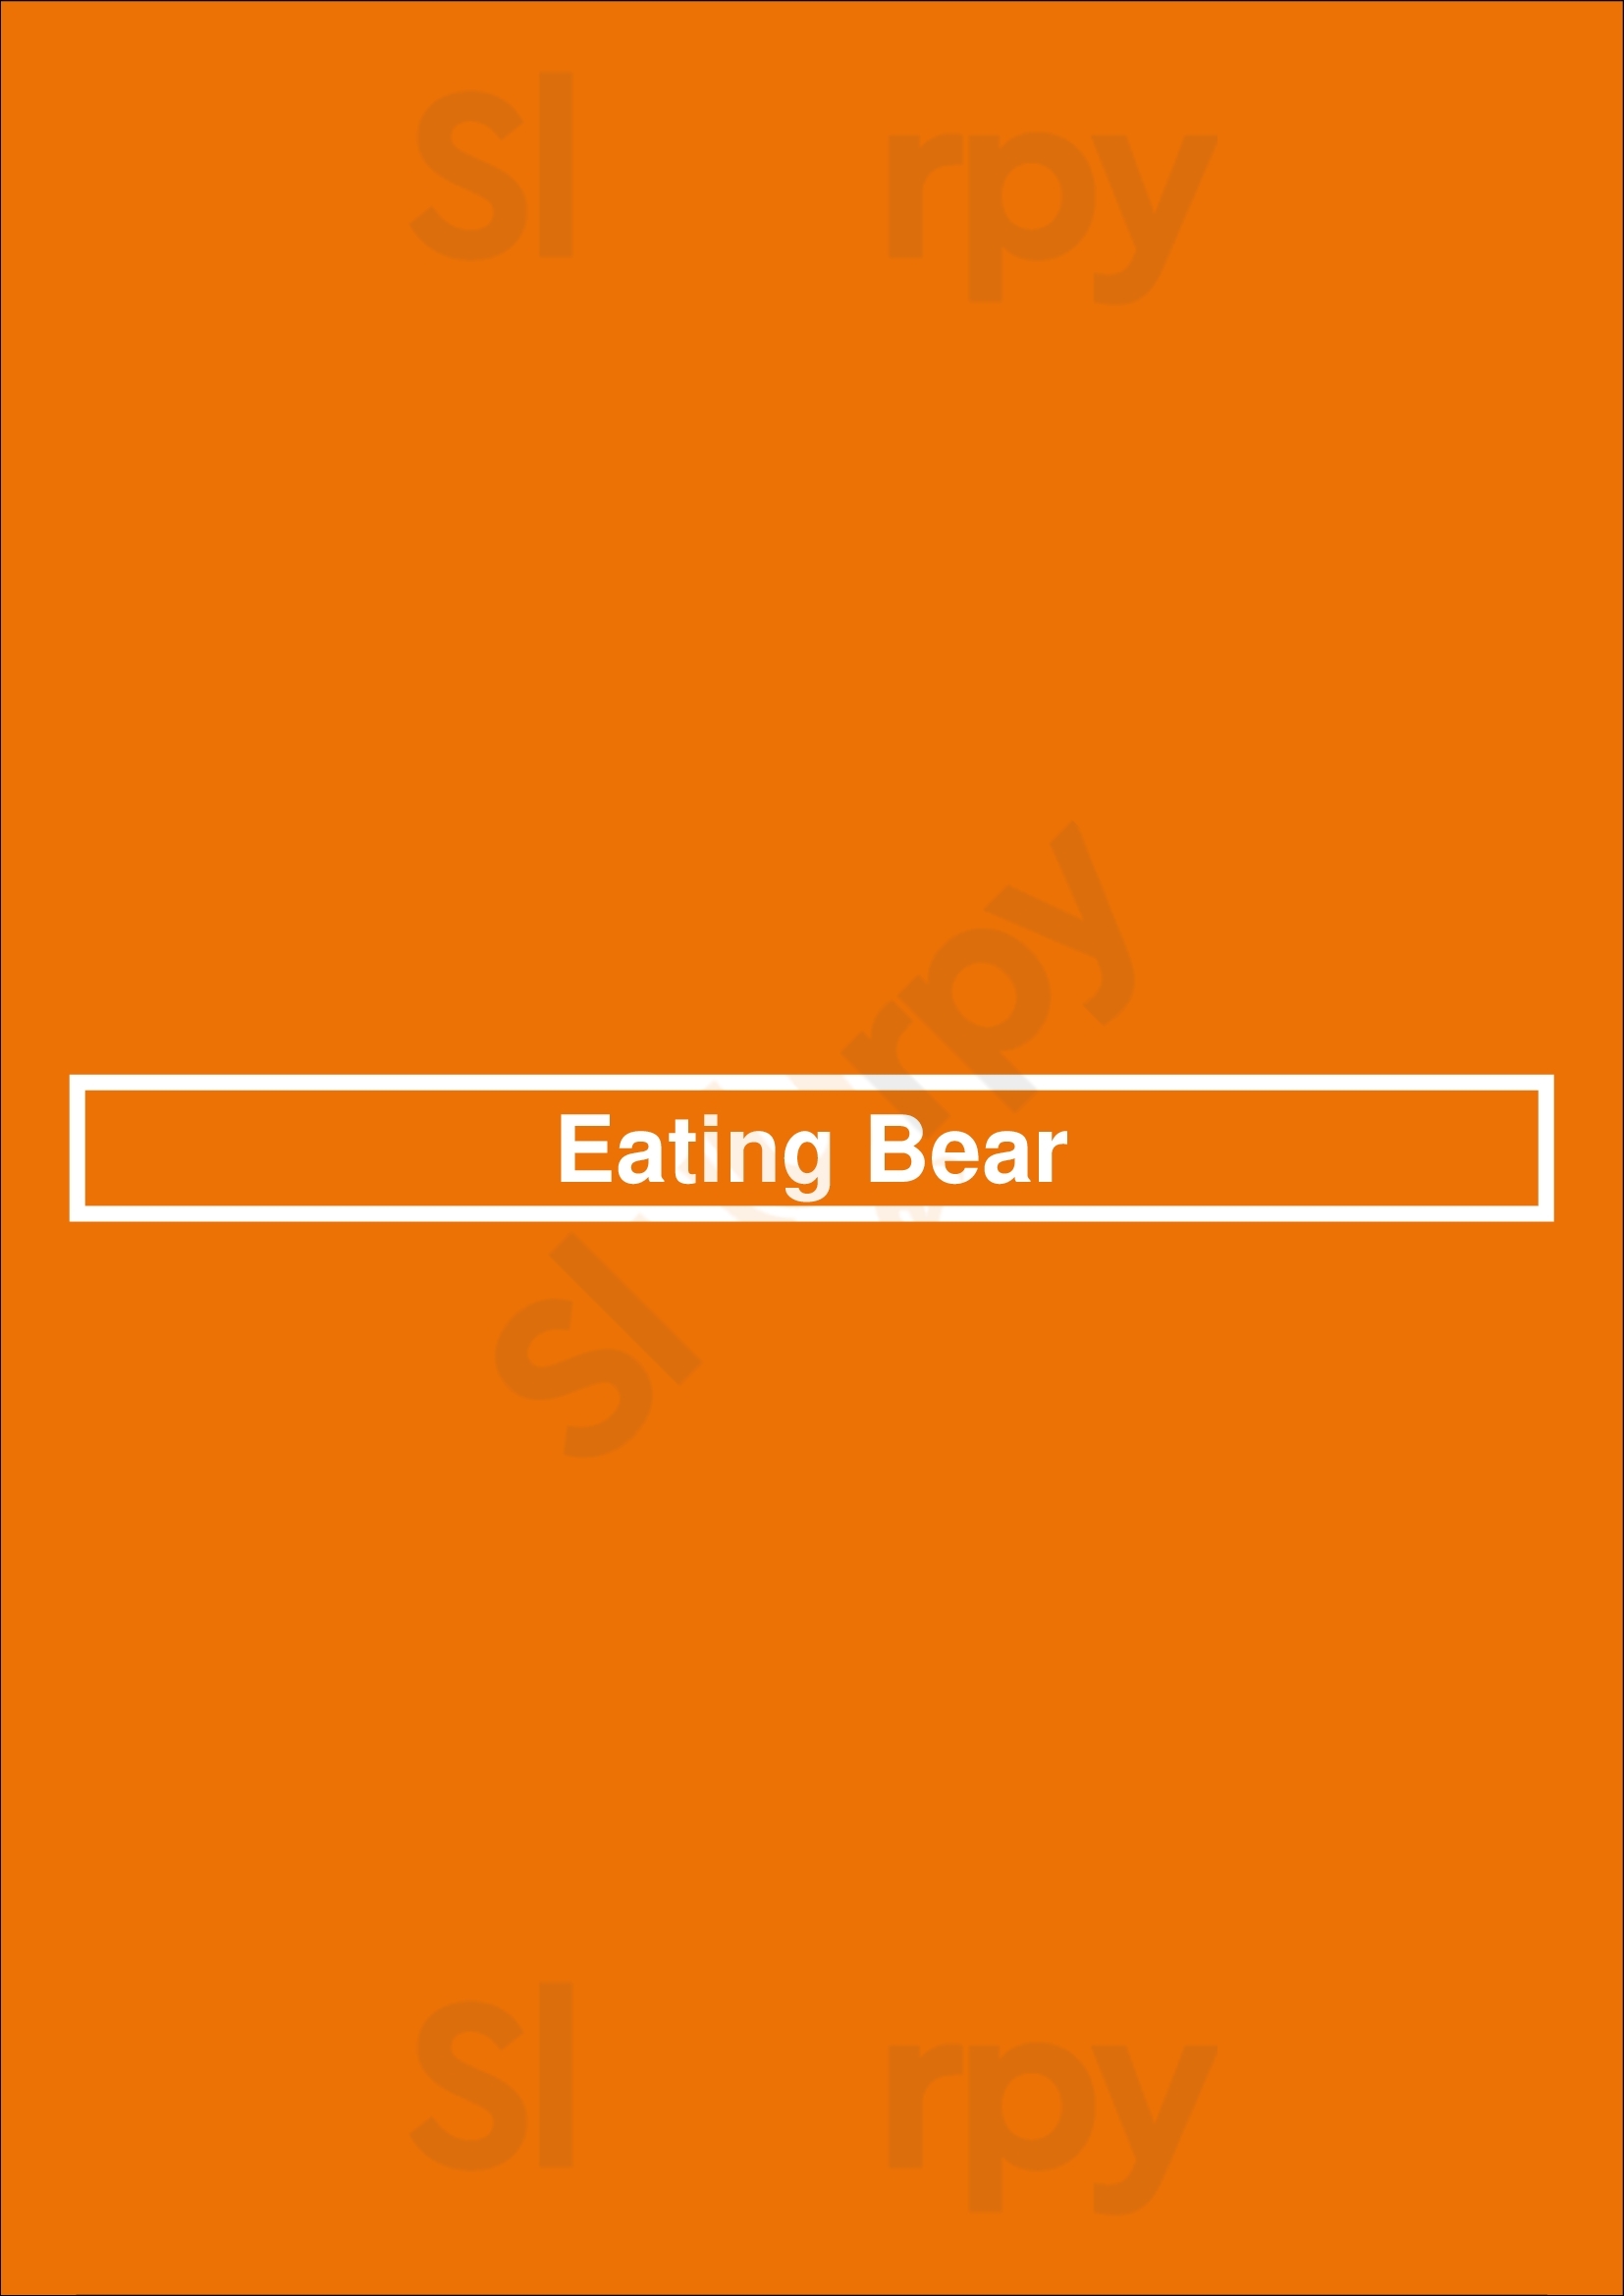 Eating Bear Lisboa Menu - 1